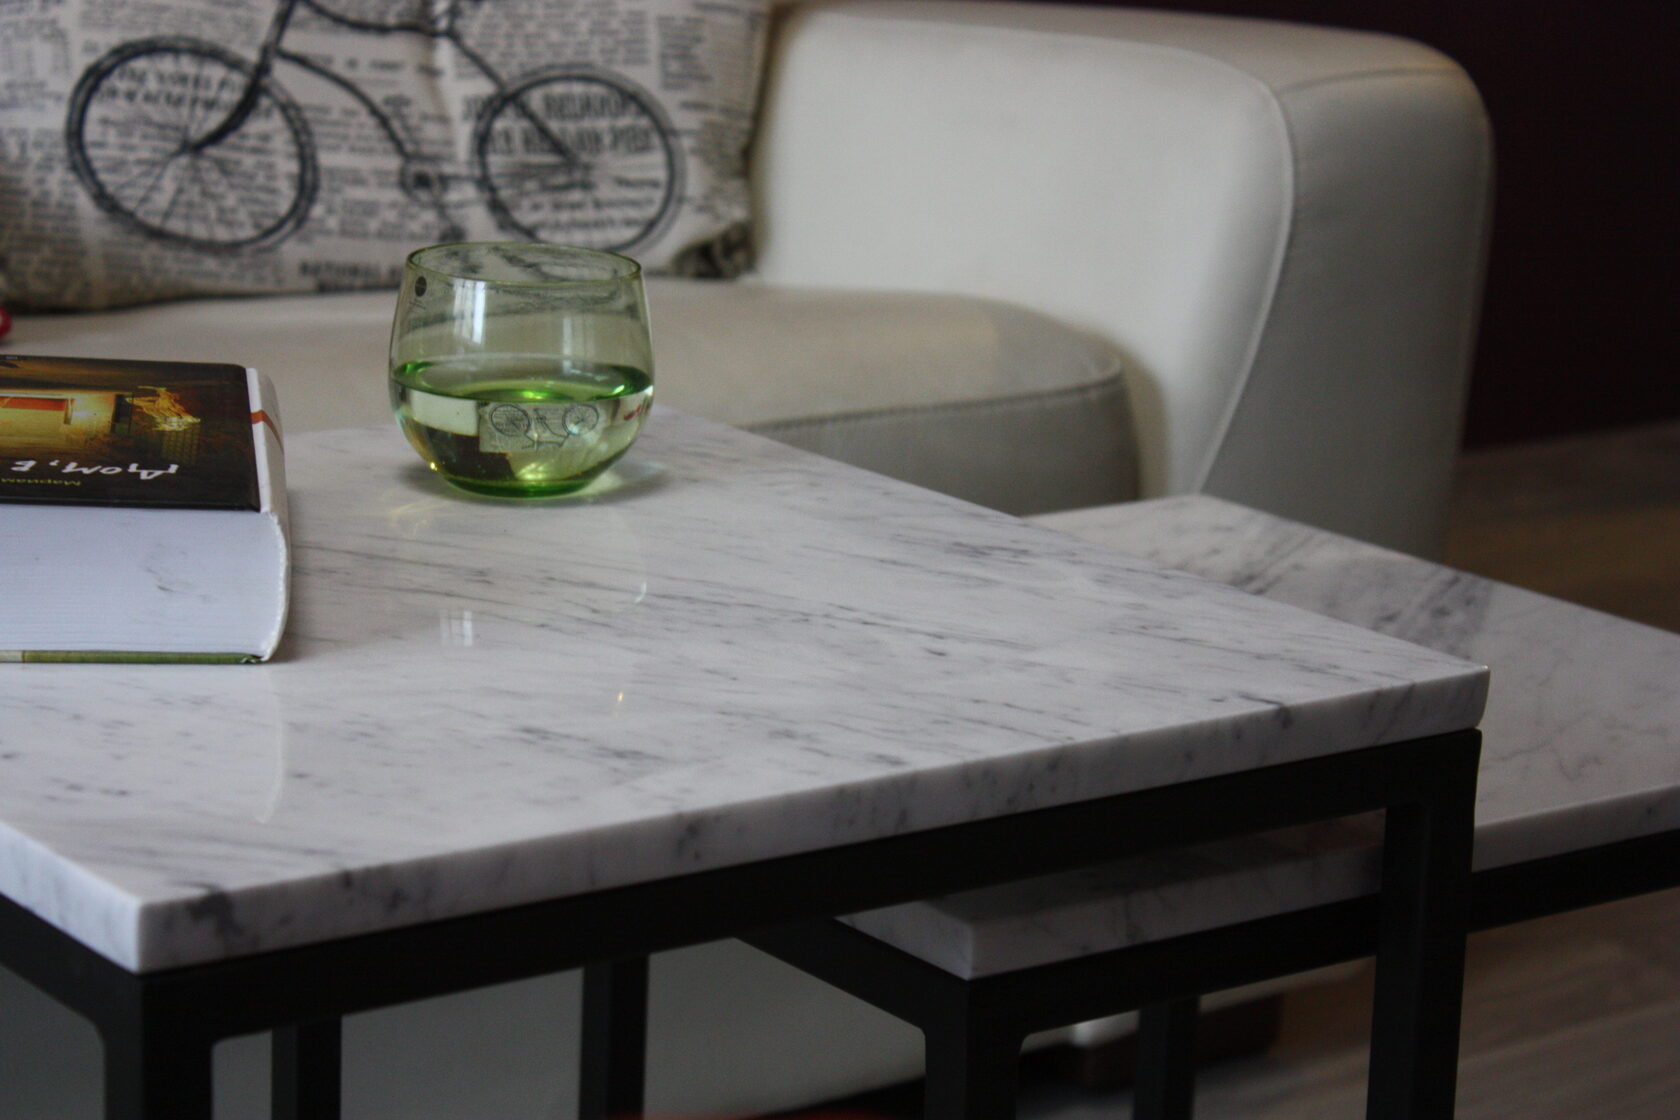 Журнальный столик из мрамора Bianco Carraca 20мм. Стоимость материала - 1368руб., изготовления - 1950руб.